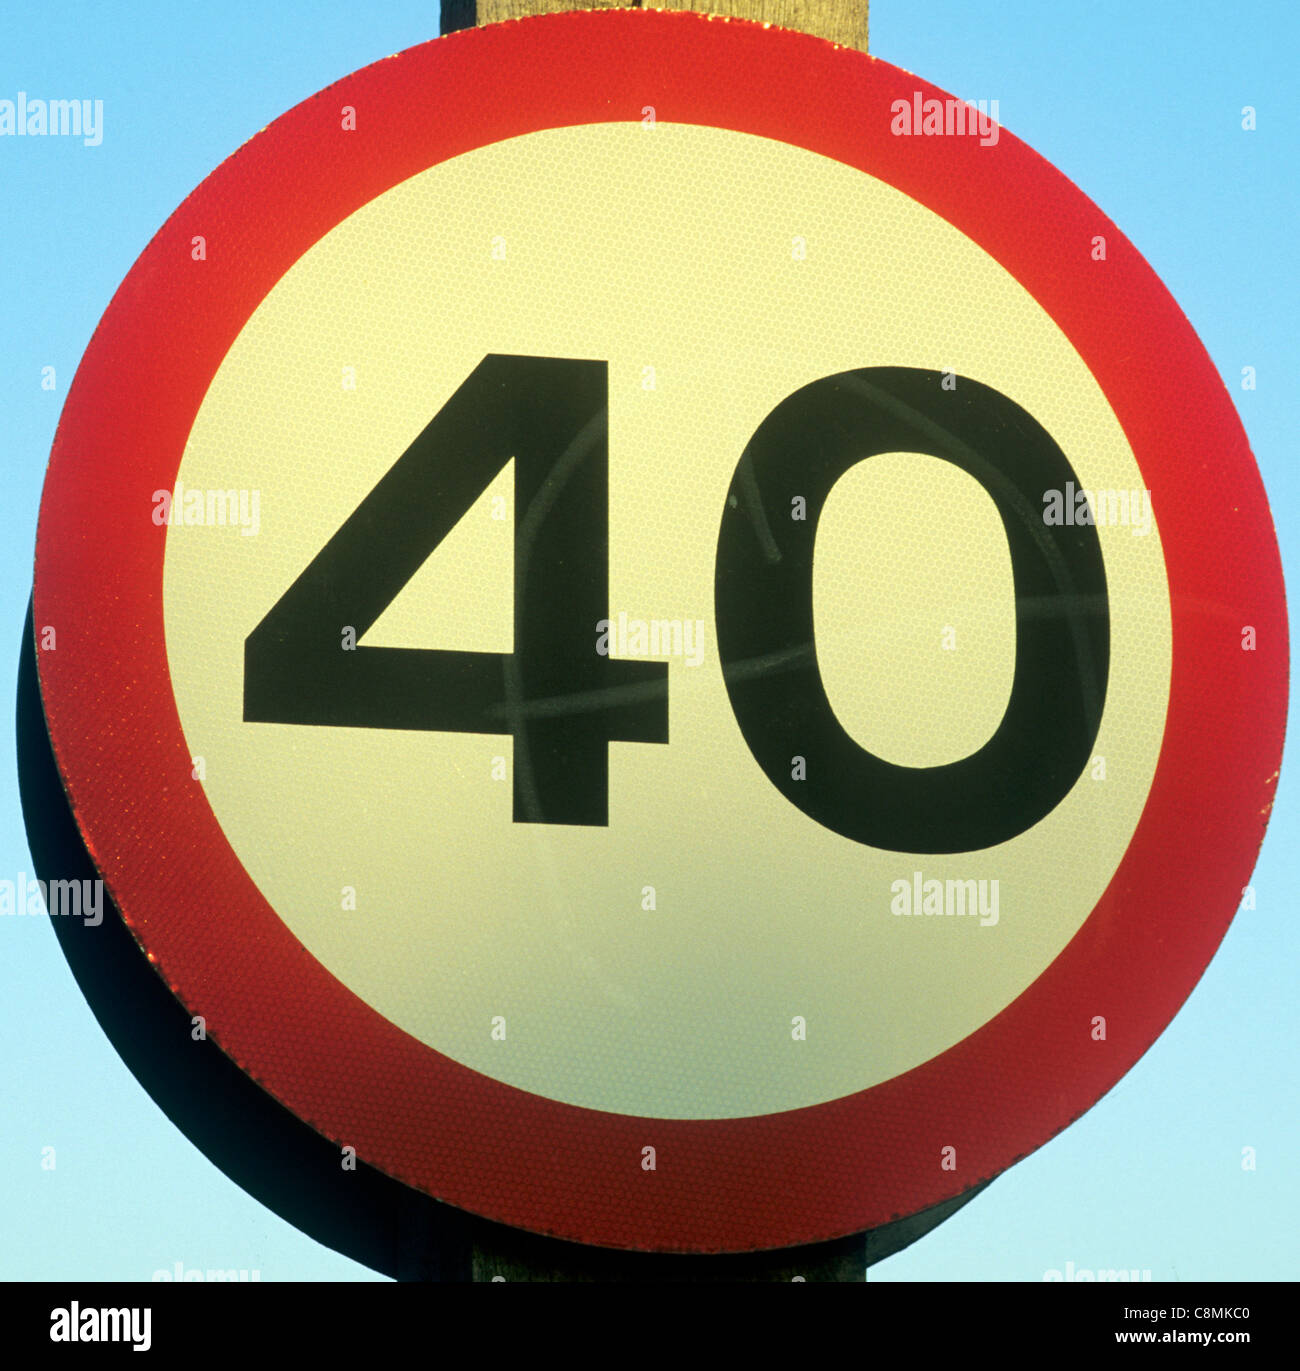 Señal del límite de velocidad de 40 MPH, UK Inglaterra Inglés signos de carretera de limitación de velocidad de automovilismo cuarenta millas por hora límites Bretaña Foto de stock